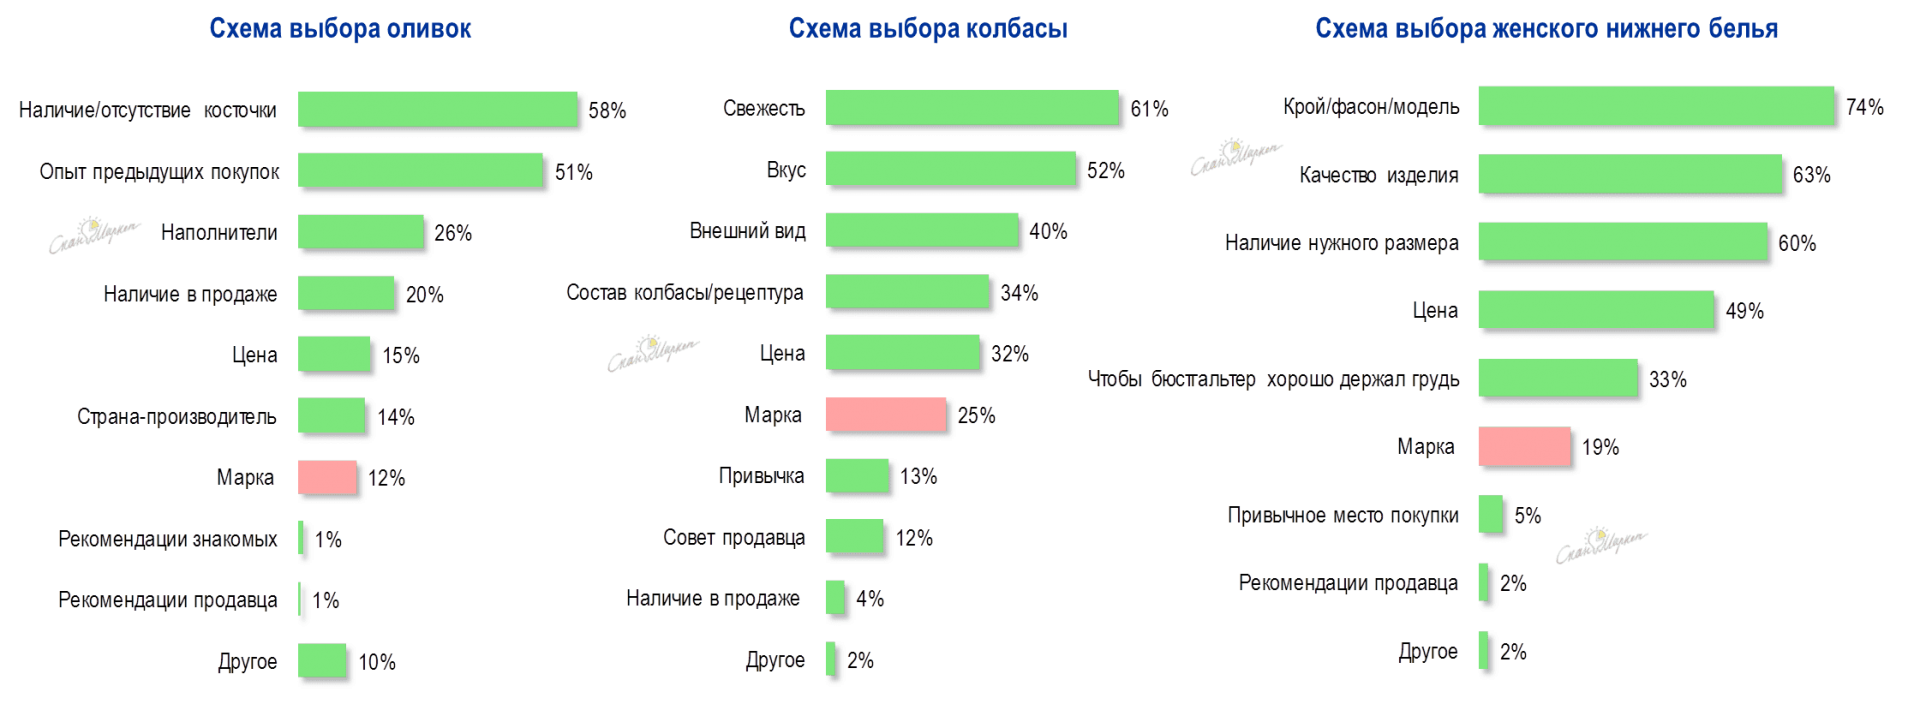 Рис.1. Факторы выбора различных товаров и доля указавших марку как фактор выбора (2000-2015гг)